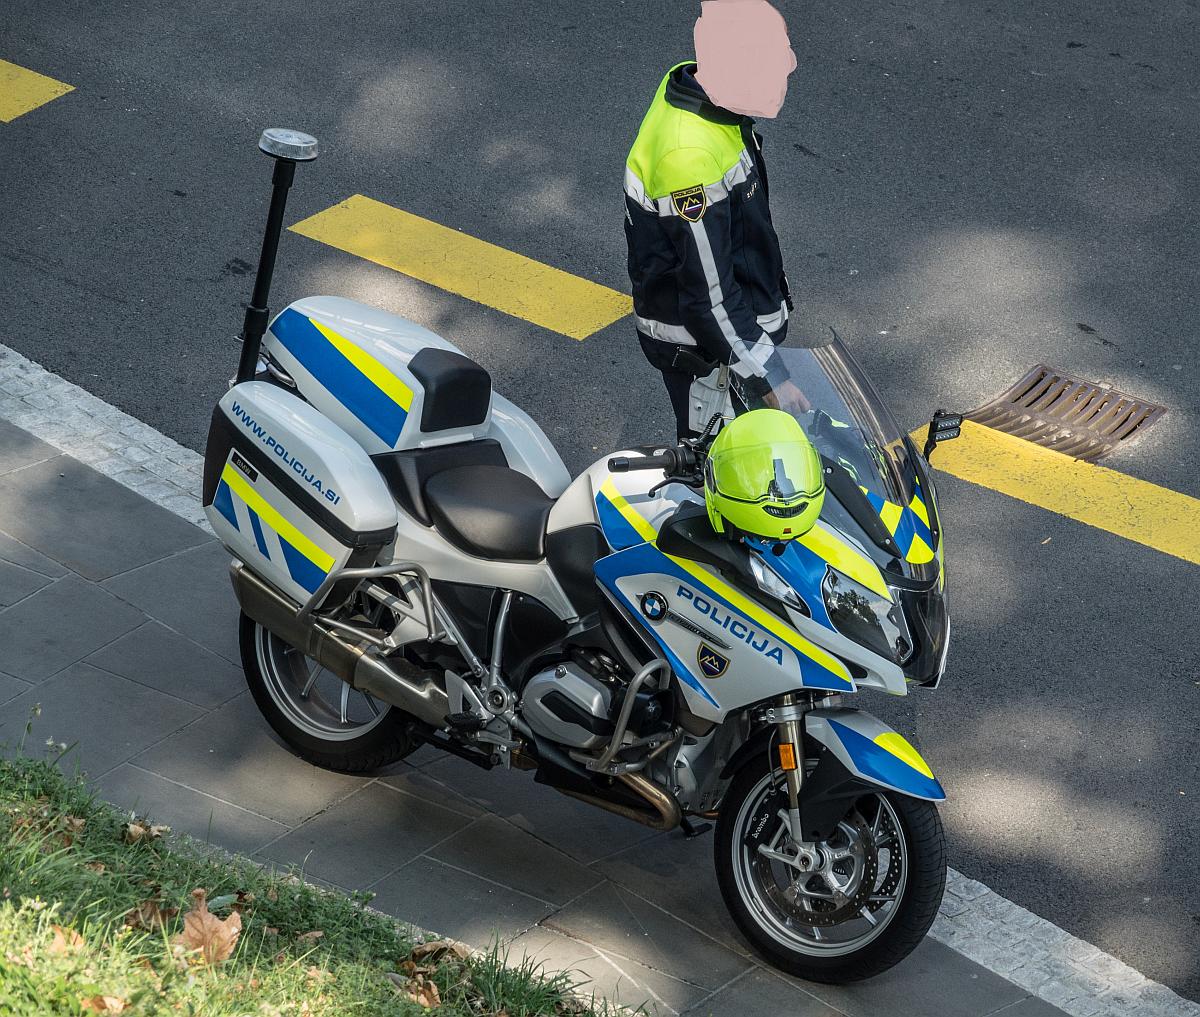 BMW Motorrad der slowenischen Polizei in Koper (SLO) am 21.08.2018.